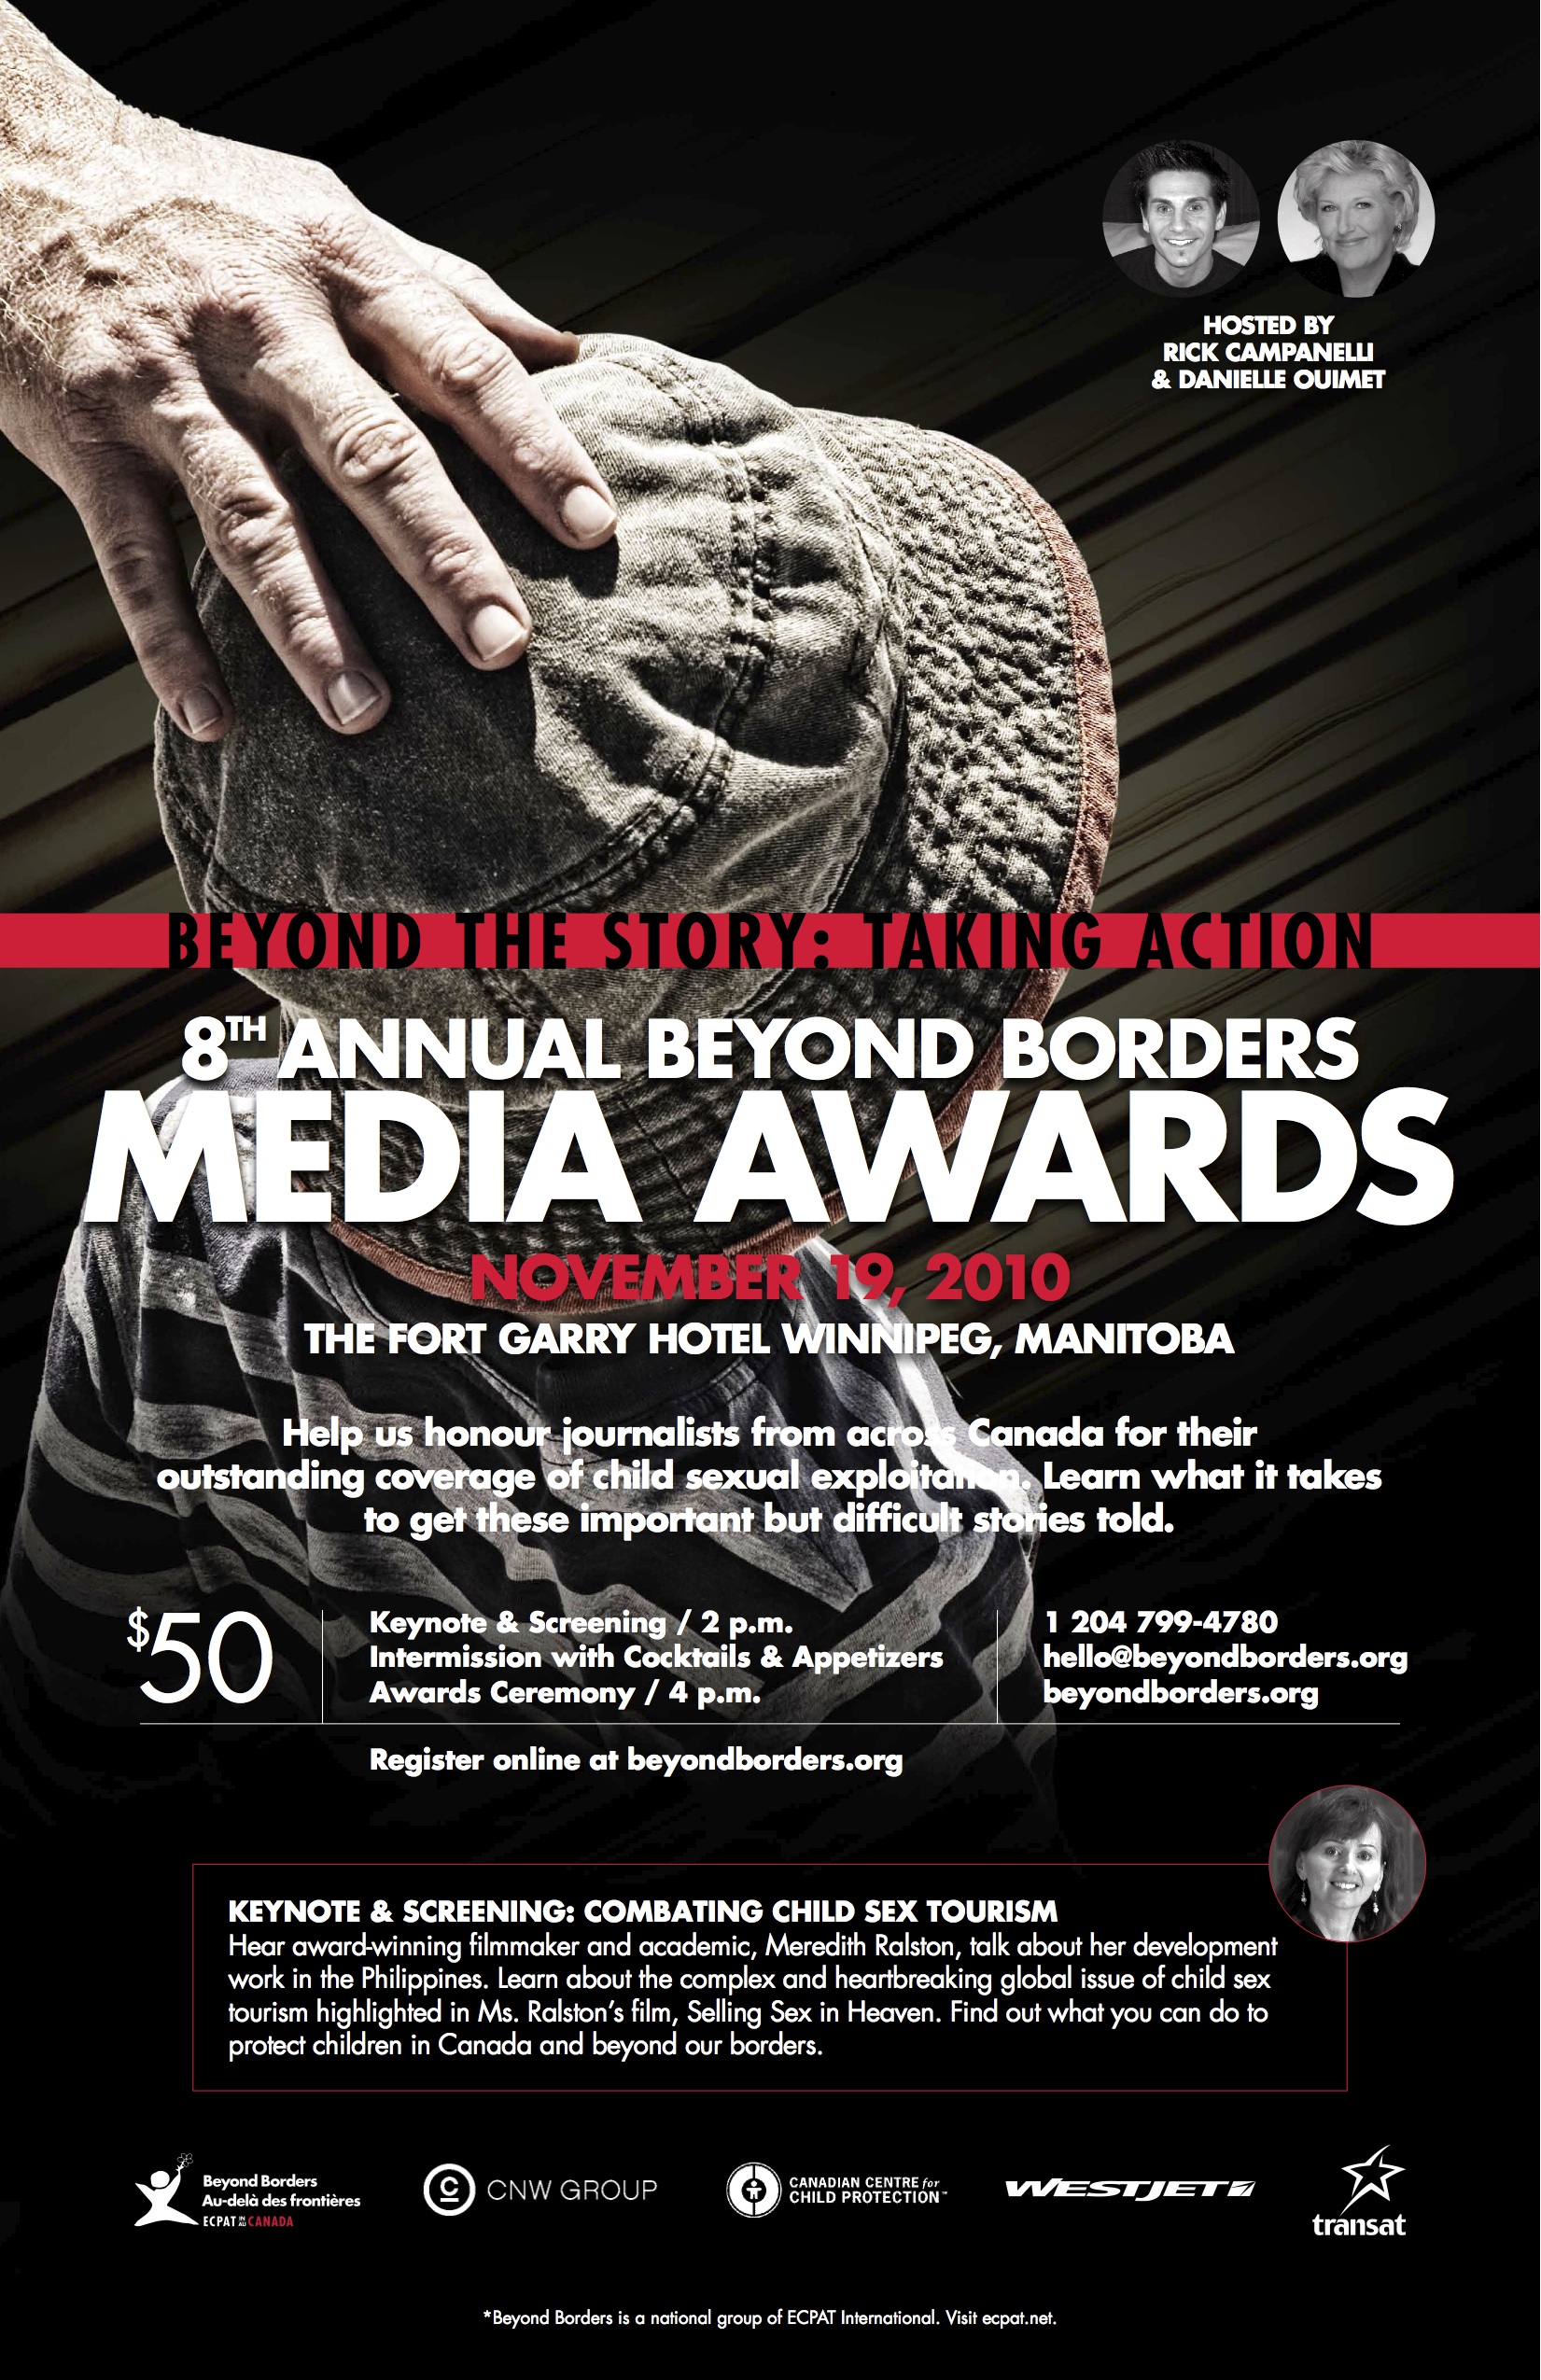 Media Awards 2010